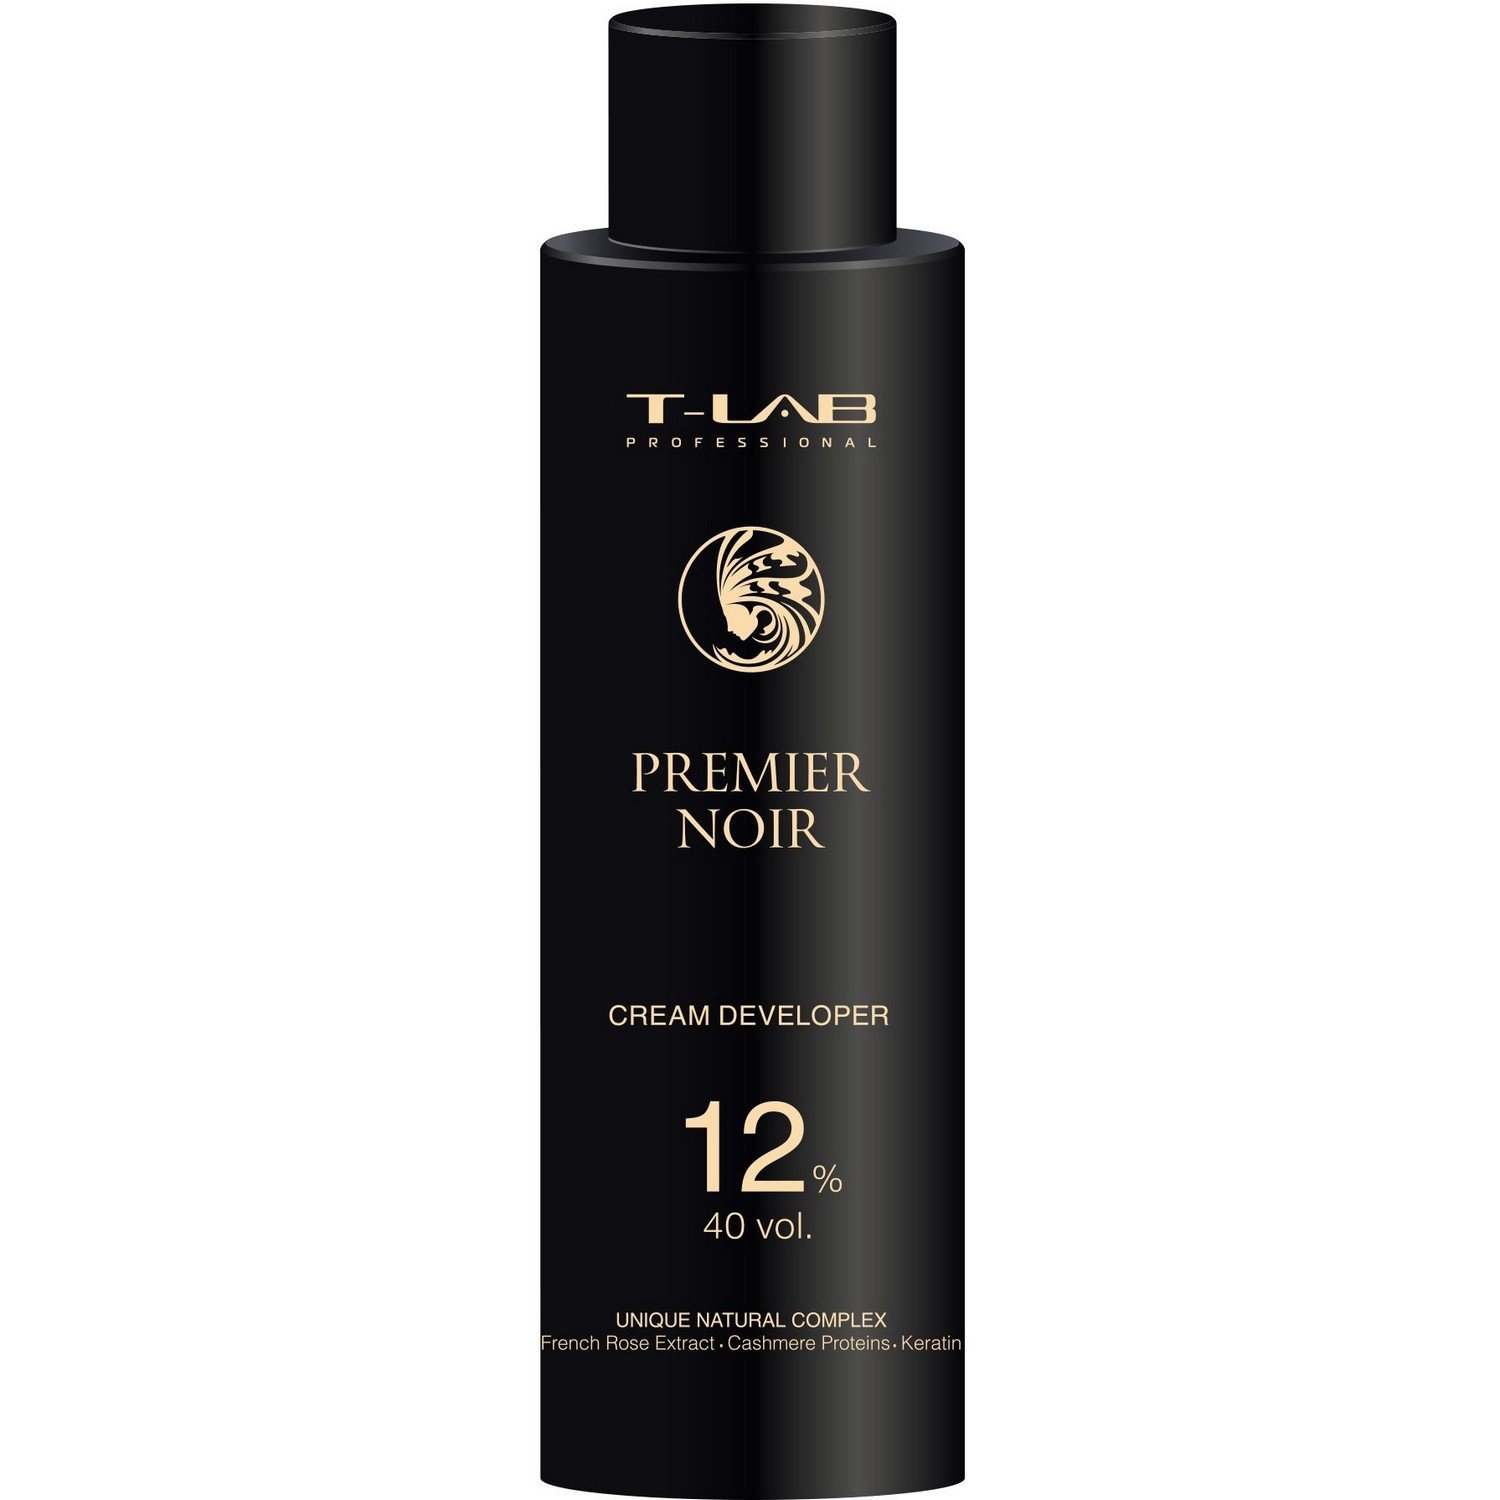 Крем-проявитель T-LAB Professional Premier Noir Cream developer 12%, 40 vol - фото 1